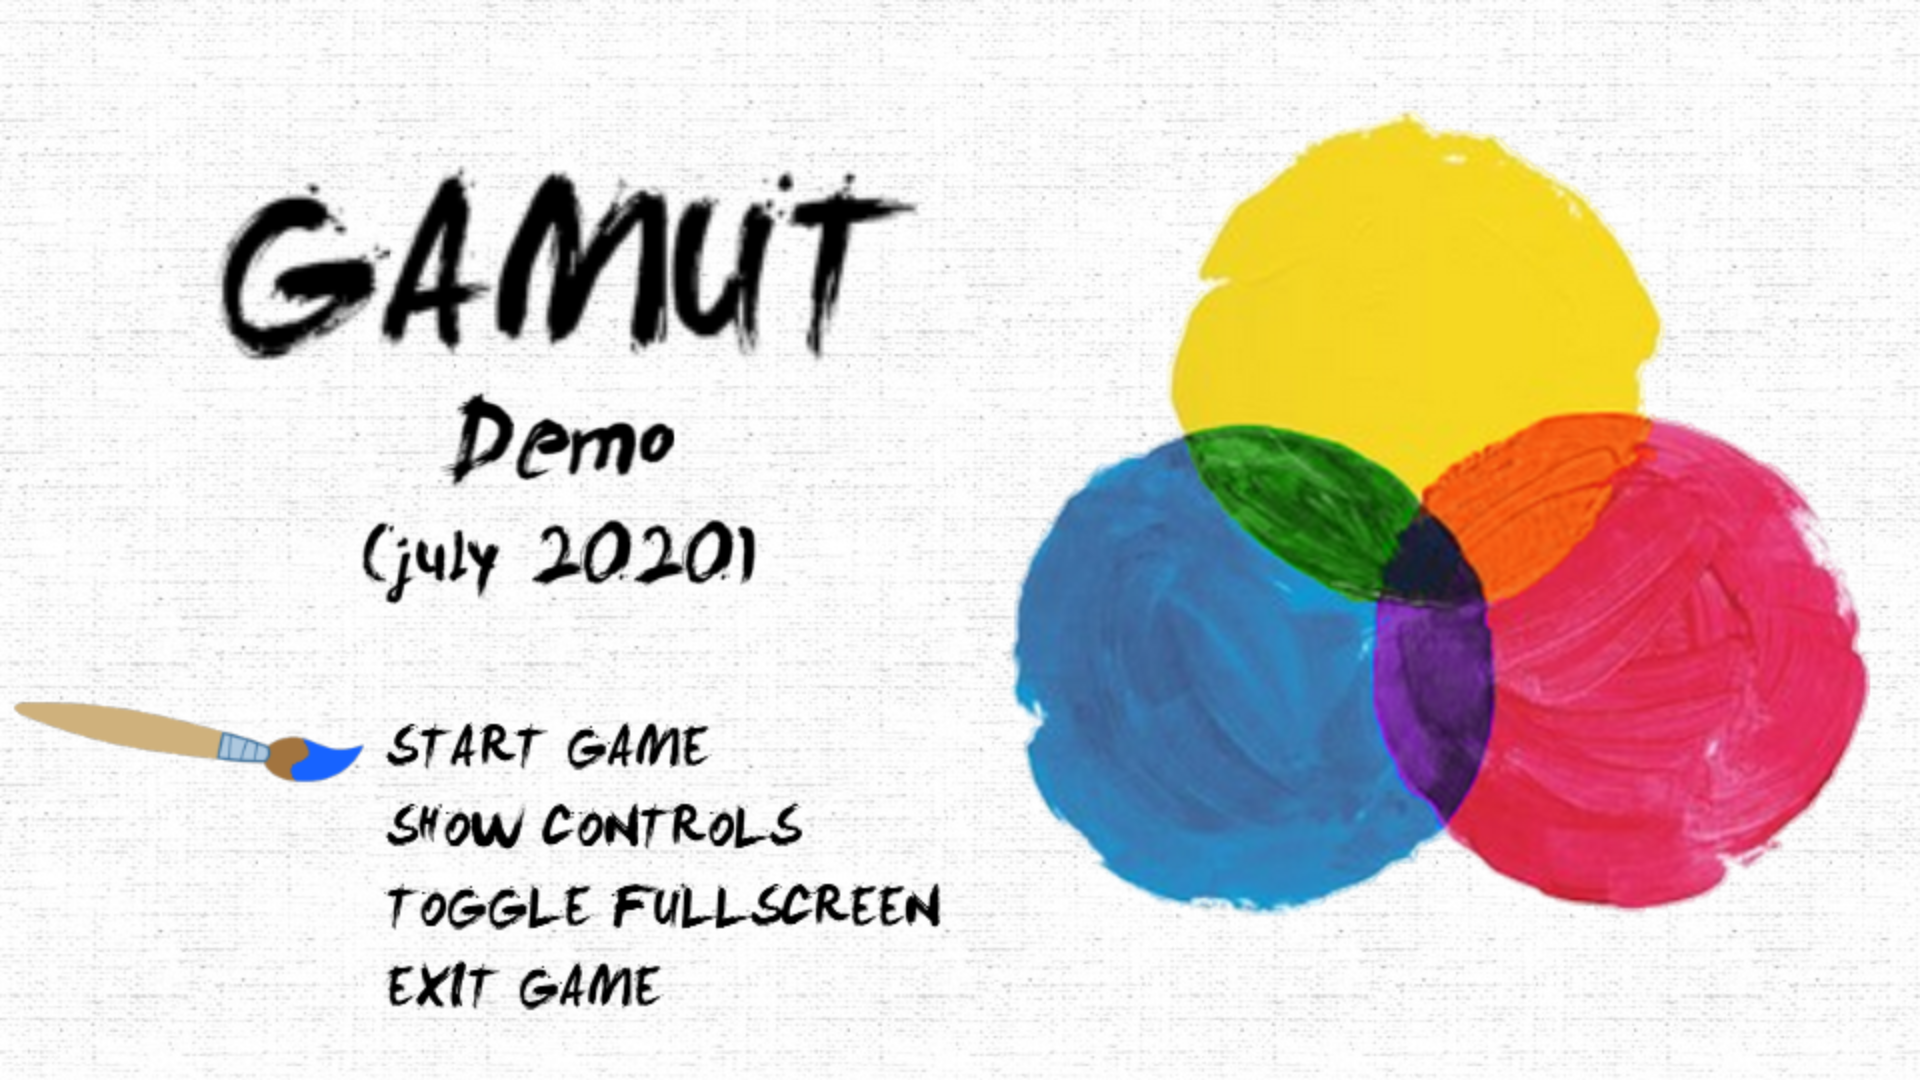 Gamut (Demo)